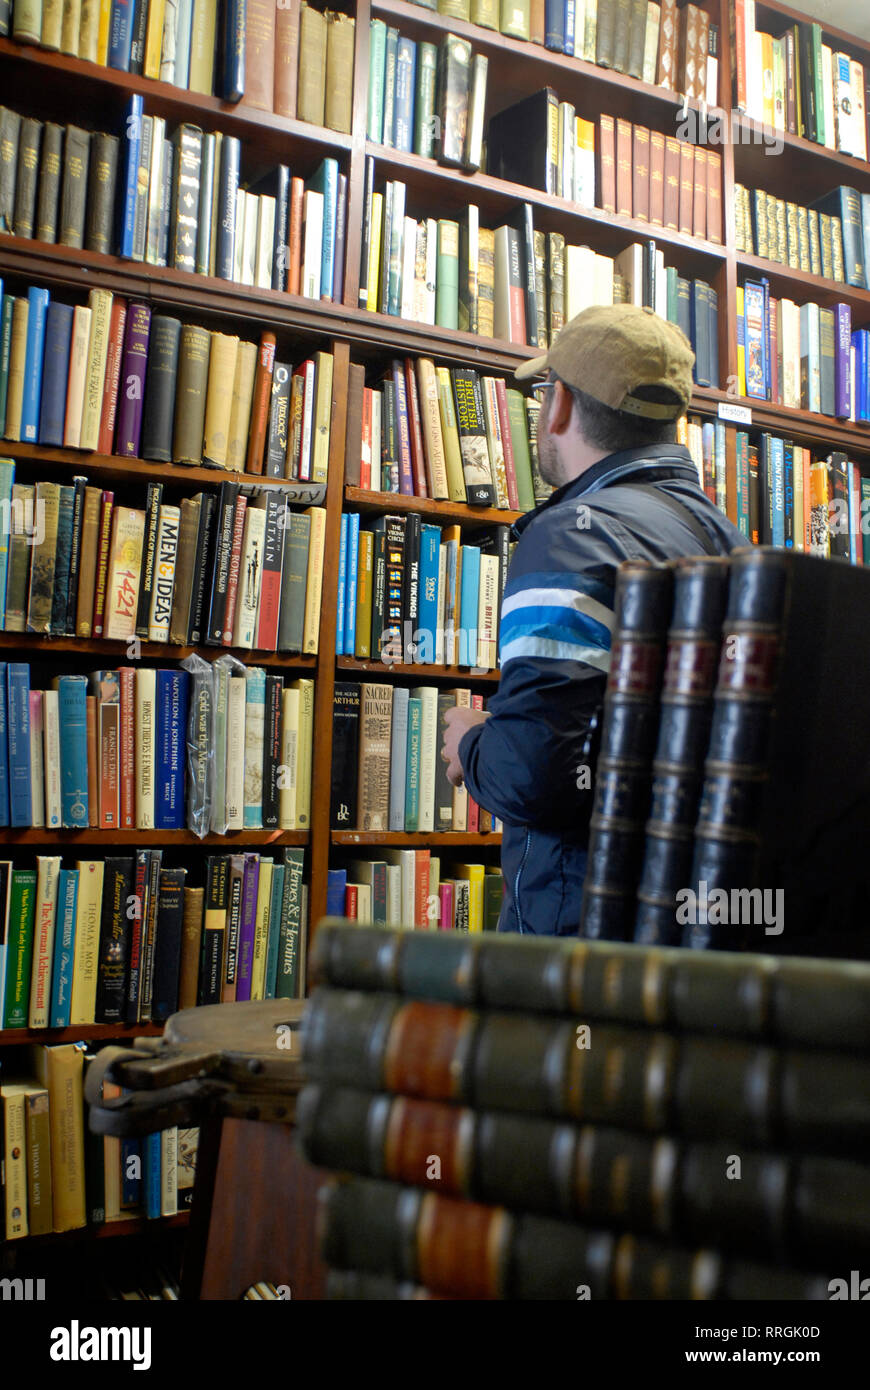 Tourisme culturel : la librairie de Wigtown, petit village de Dumfries et Galloway, connue sous le nom de National Scotland Book Town, Royaume-Uni Banque D'Images